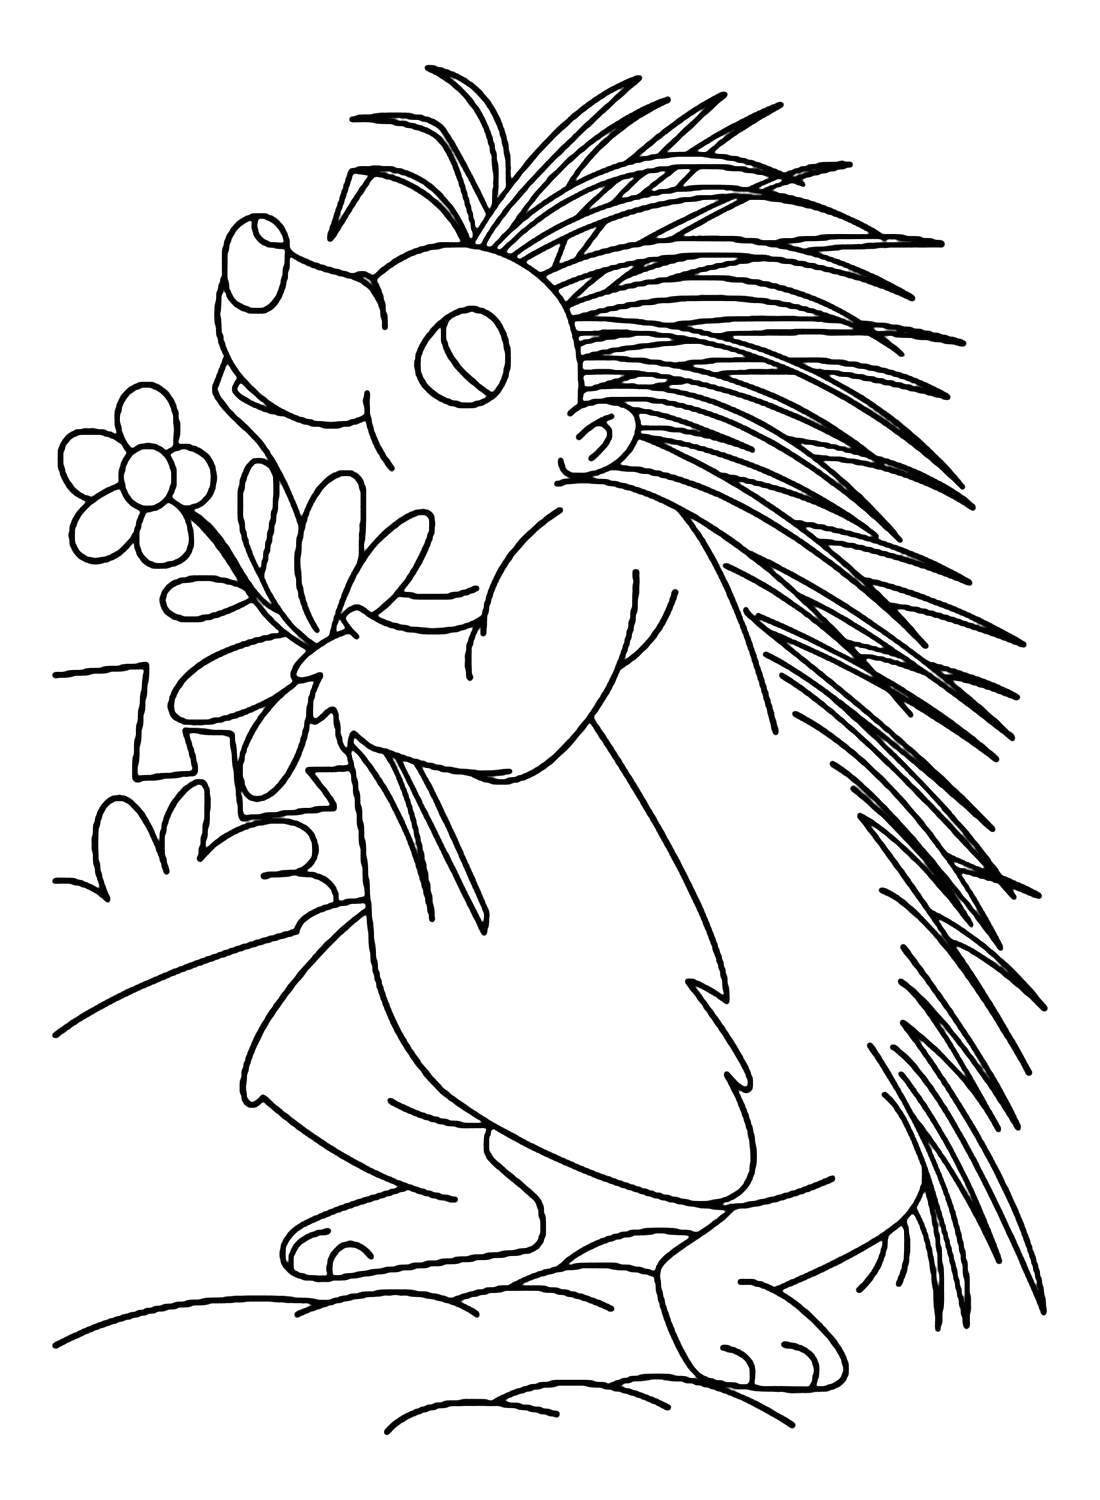 Раскраска Дикобраз, которую можно скачать с сайта Porcupine